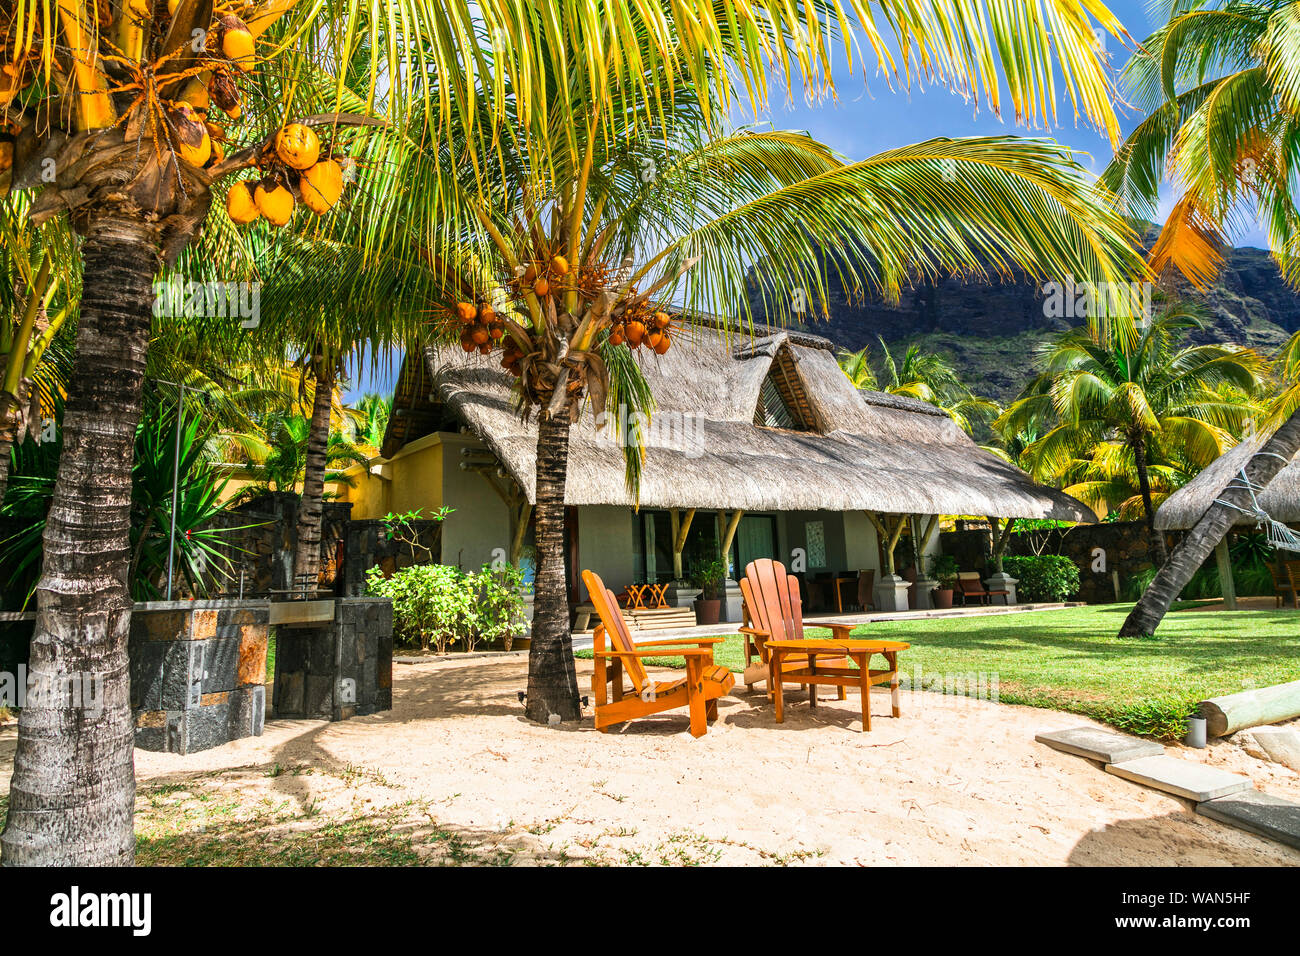 Vacances tropicales exotiques et de magnifiques plages de l'Ile Maurice Banque D'Images